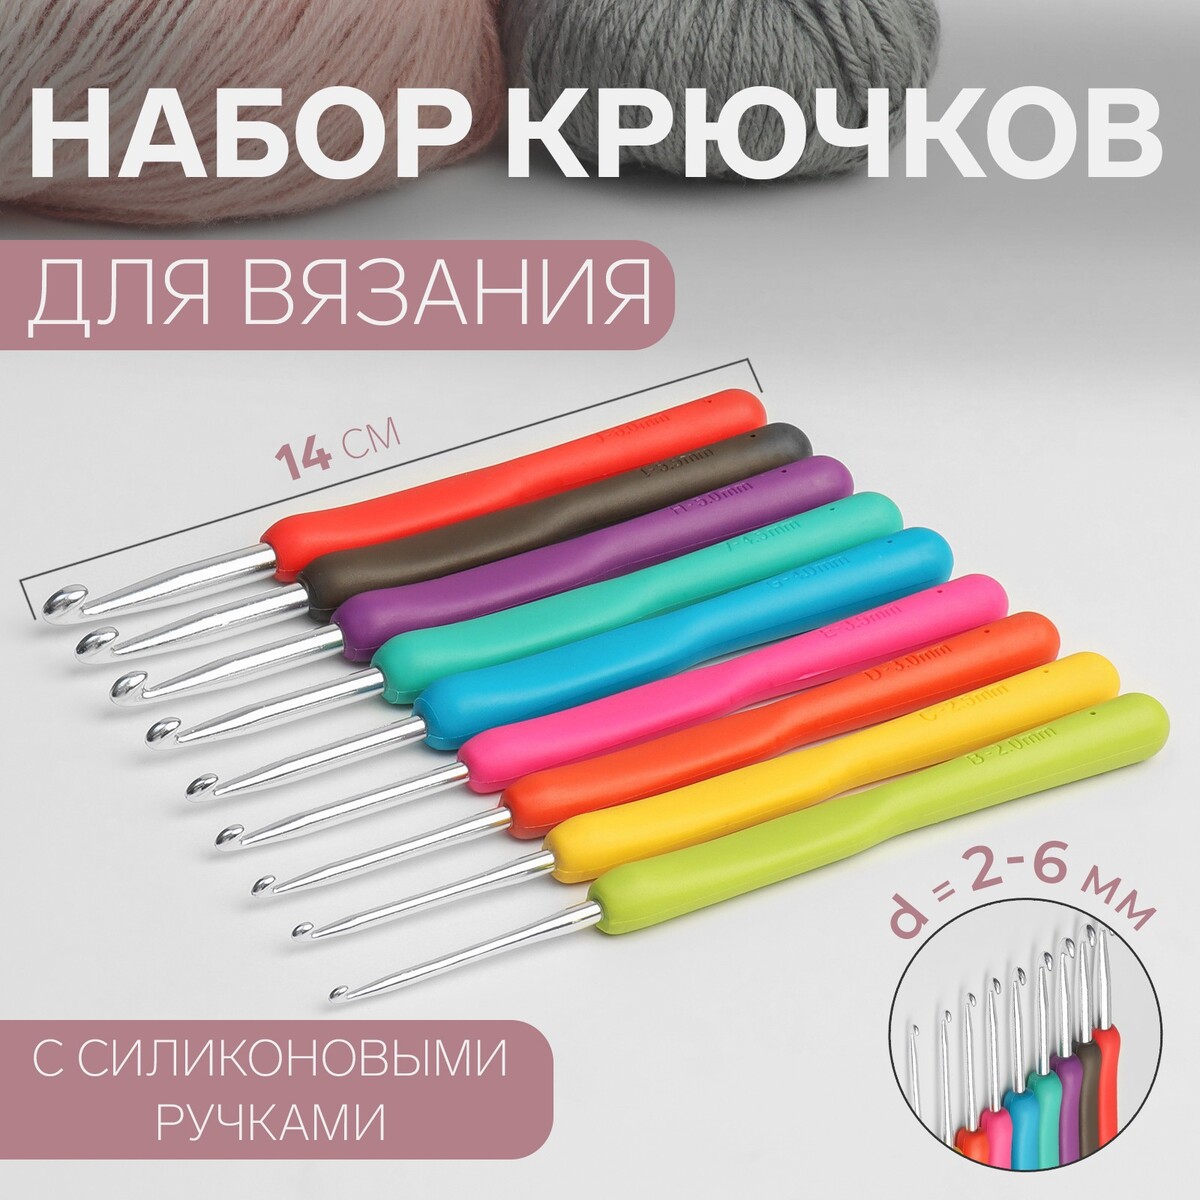 Набор крючков для вязания, d = 2-6 мм, 14 см, 9 шт, цвет разноцветный арифметика вязания авторский метод расчетов и вязания одежды с имитацией втачного рукава